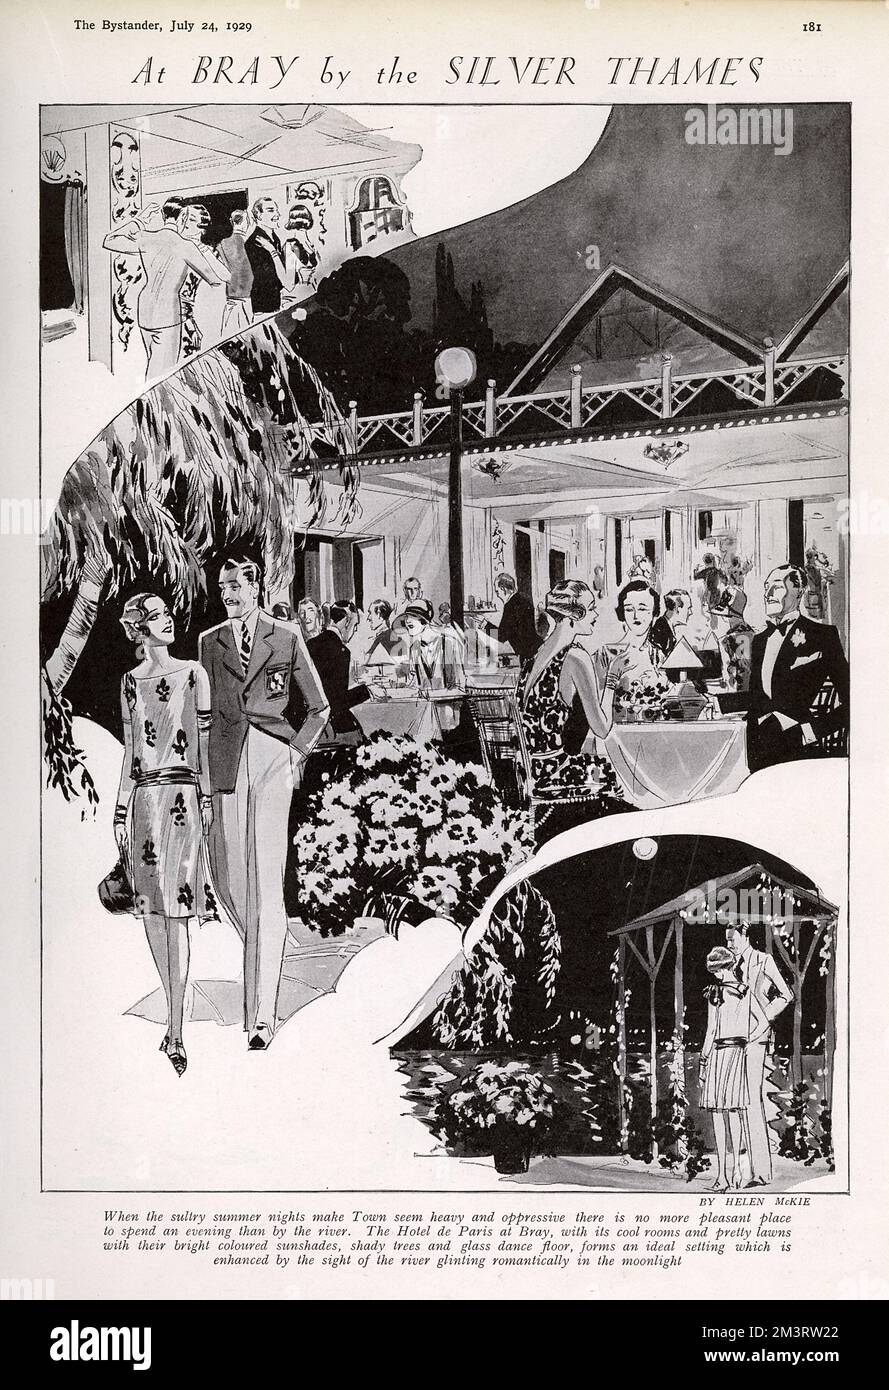 Szenen im Hotel de Paris in Bray, einem beliebten Nachtlokal in den 1920er Jahren für Spaßsuchende, die London für den Abend entfliehen möchten. Das Angebot umfasst kühle Zimmer, hübsche Rasenflächen und helle Sonnenschirme, schattige Bäume und eine Tanzfläche aus Glas, alles am Fluss, "das romantisch im Mondlicht glitzert". Datum: 1929 Stockfoto